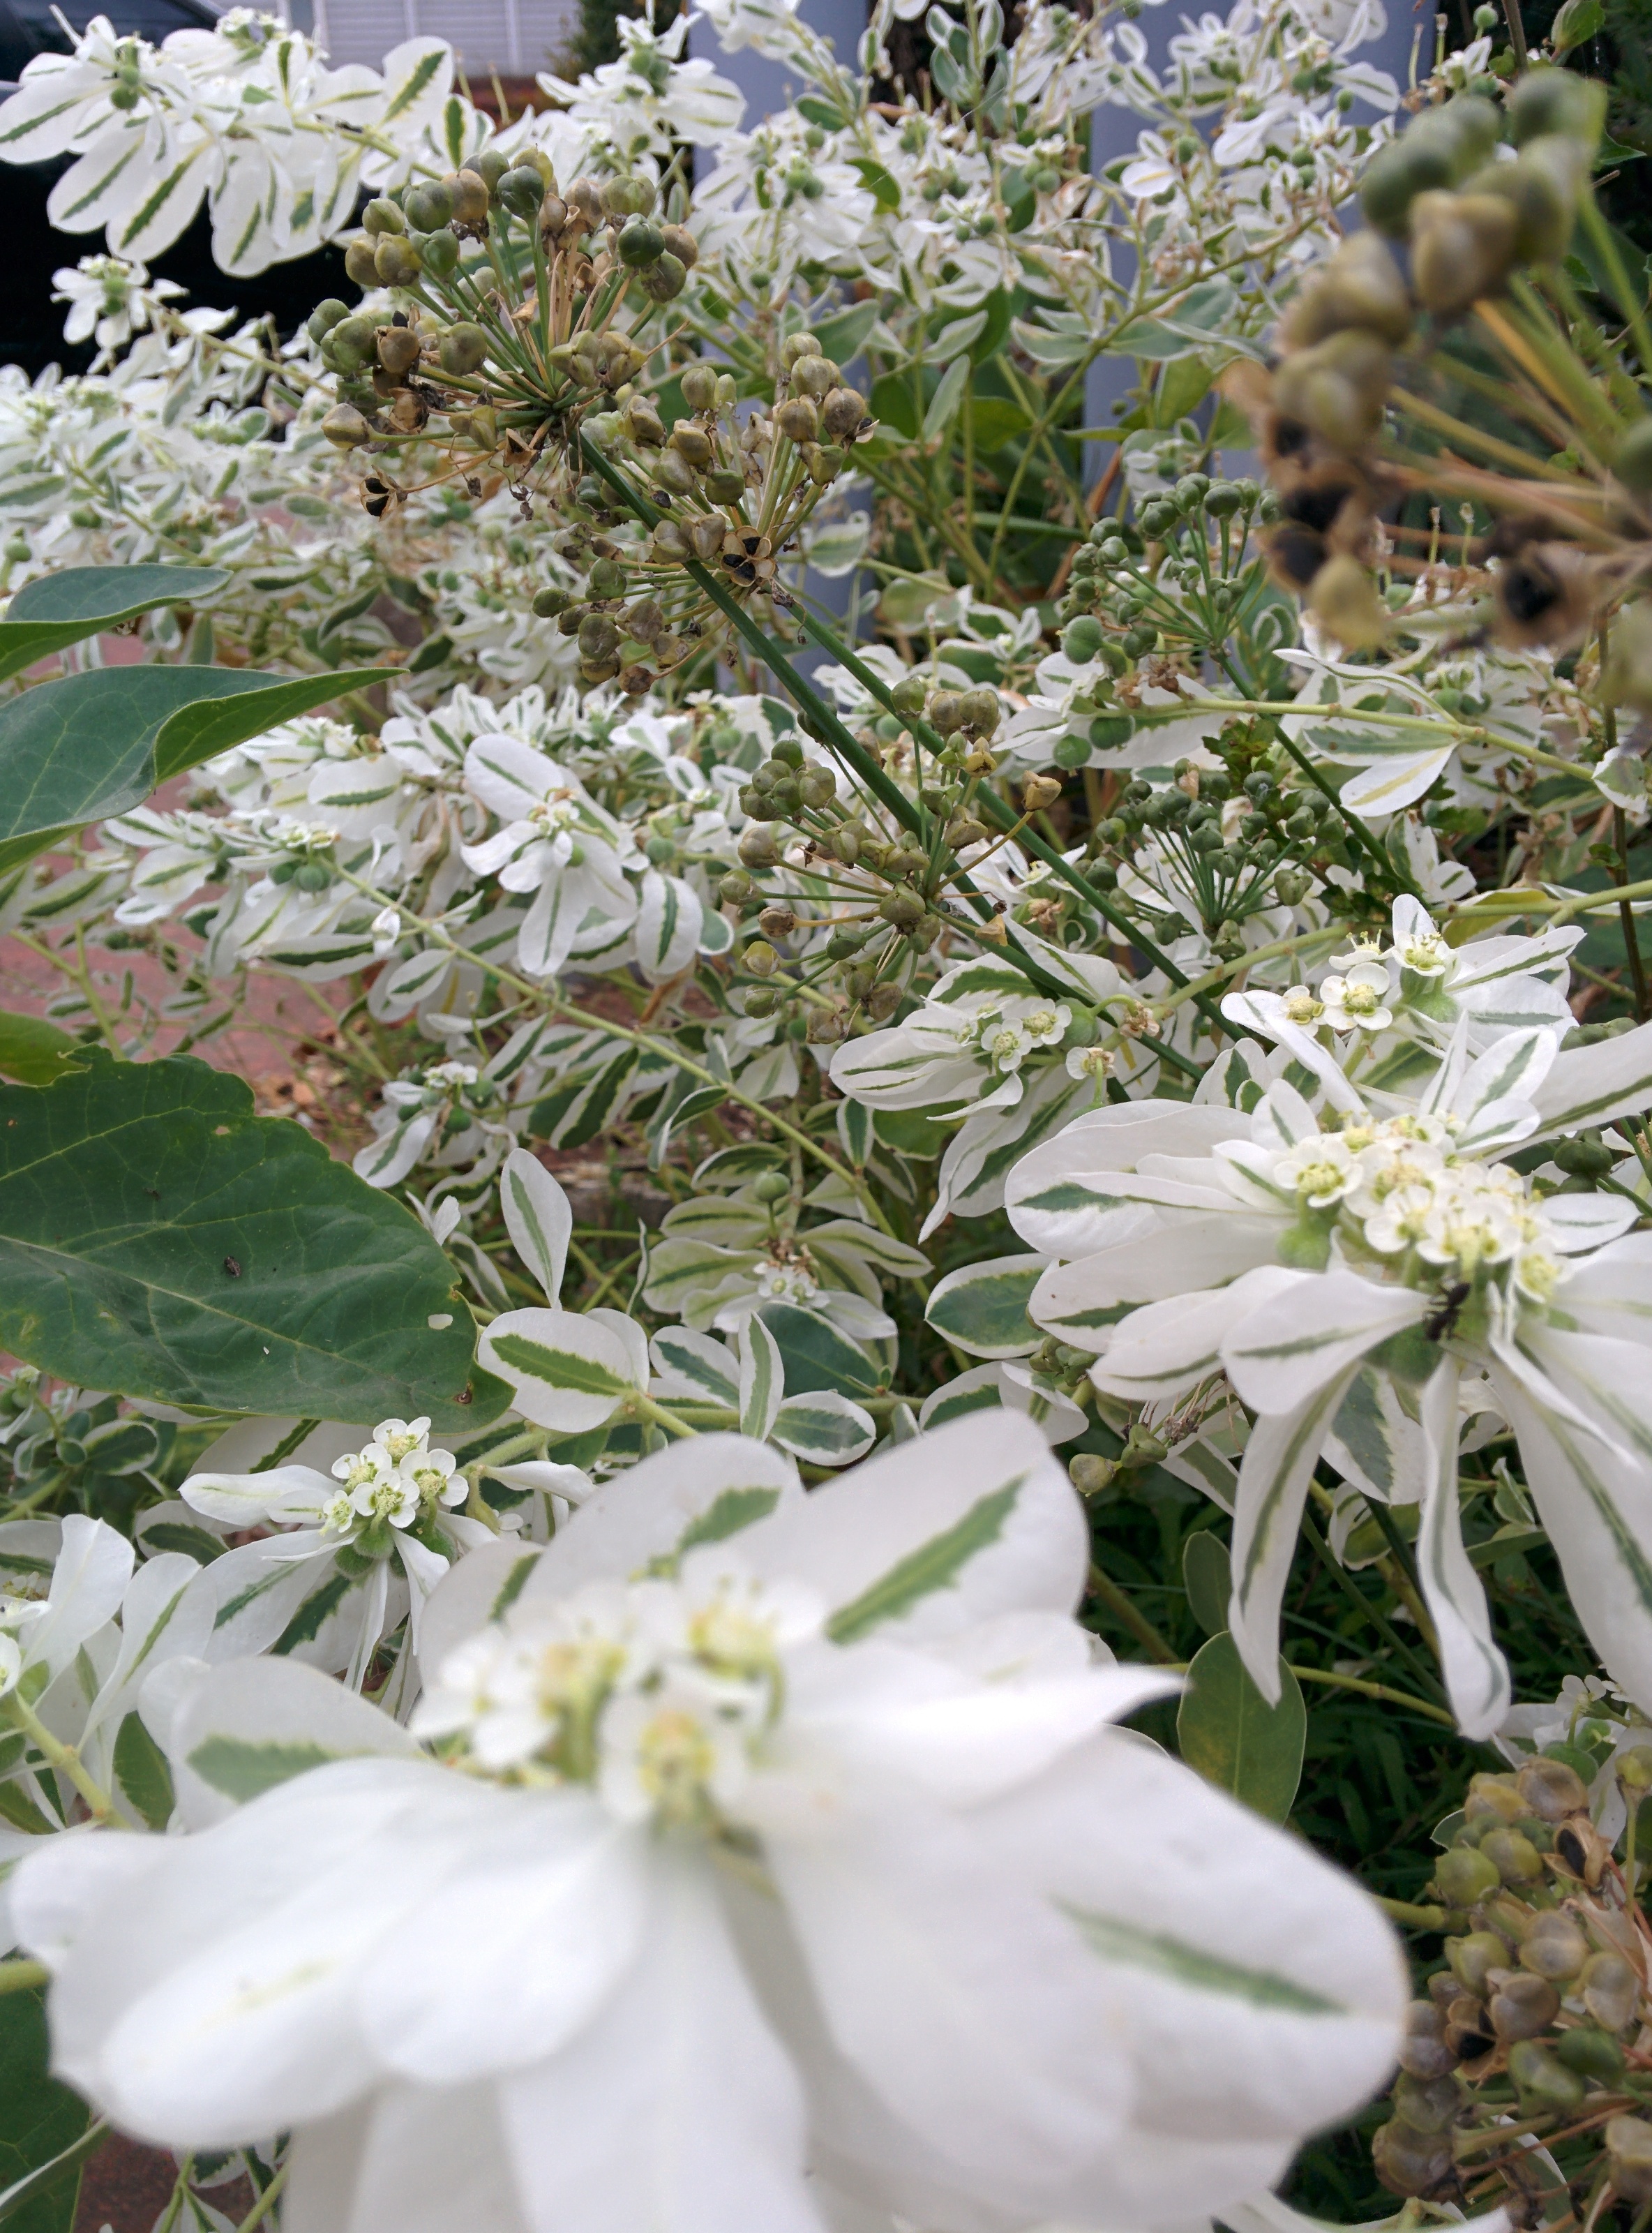 IMG_20150926_162244.jpg 흰색 이파리 하얀색 작은 꽃을 피운 설악초(雪嶽草)